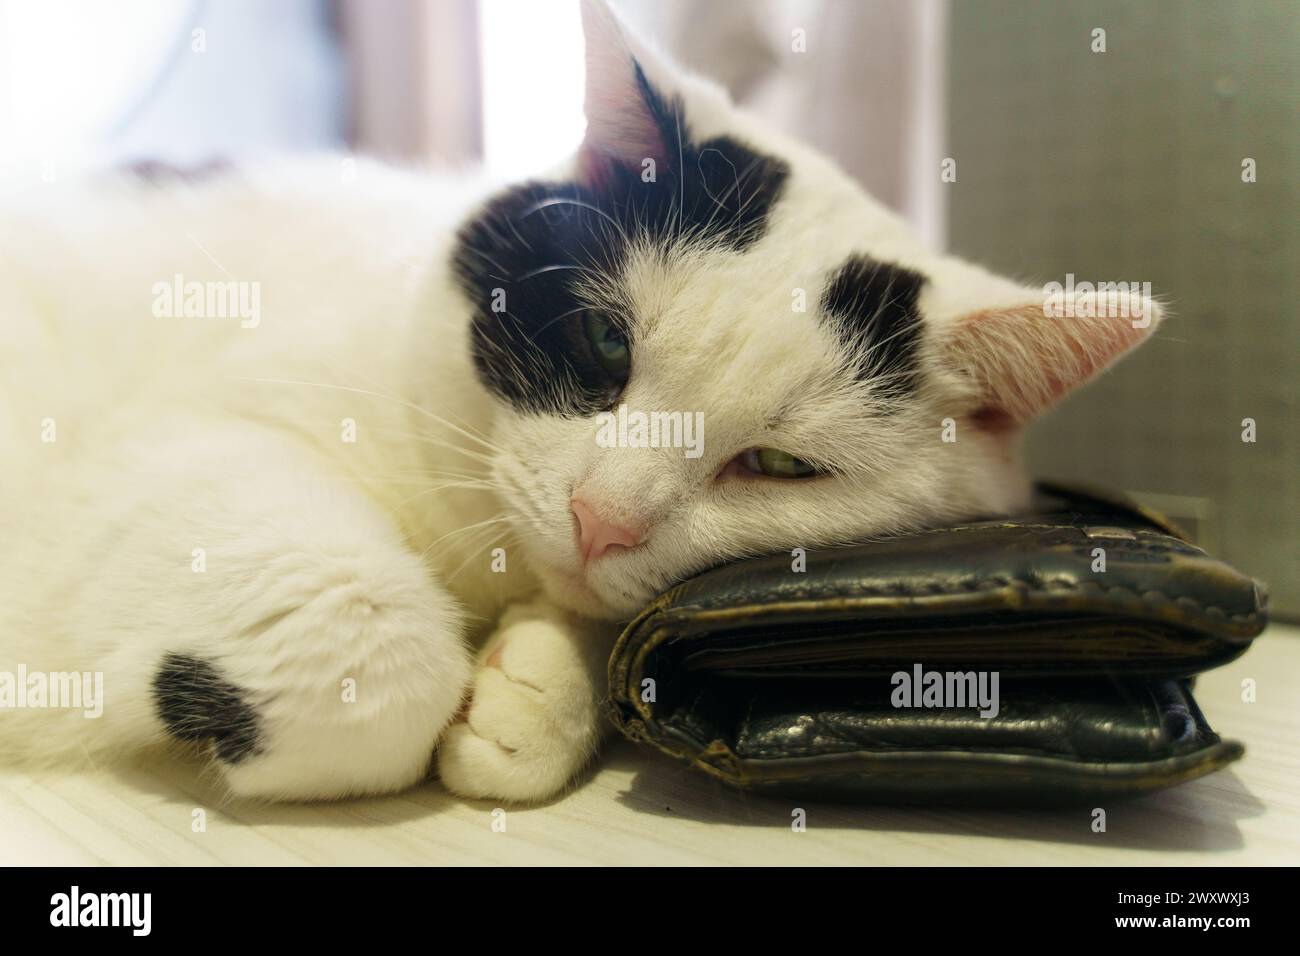 Eine schwarz-weiße Katze, die bequem auf einer Handtasche liegt und ihr elegantes Fell und ihre entspannte Haltung zeigt. Stockfoto